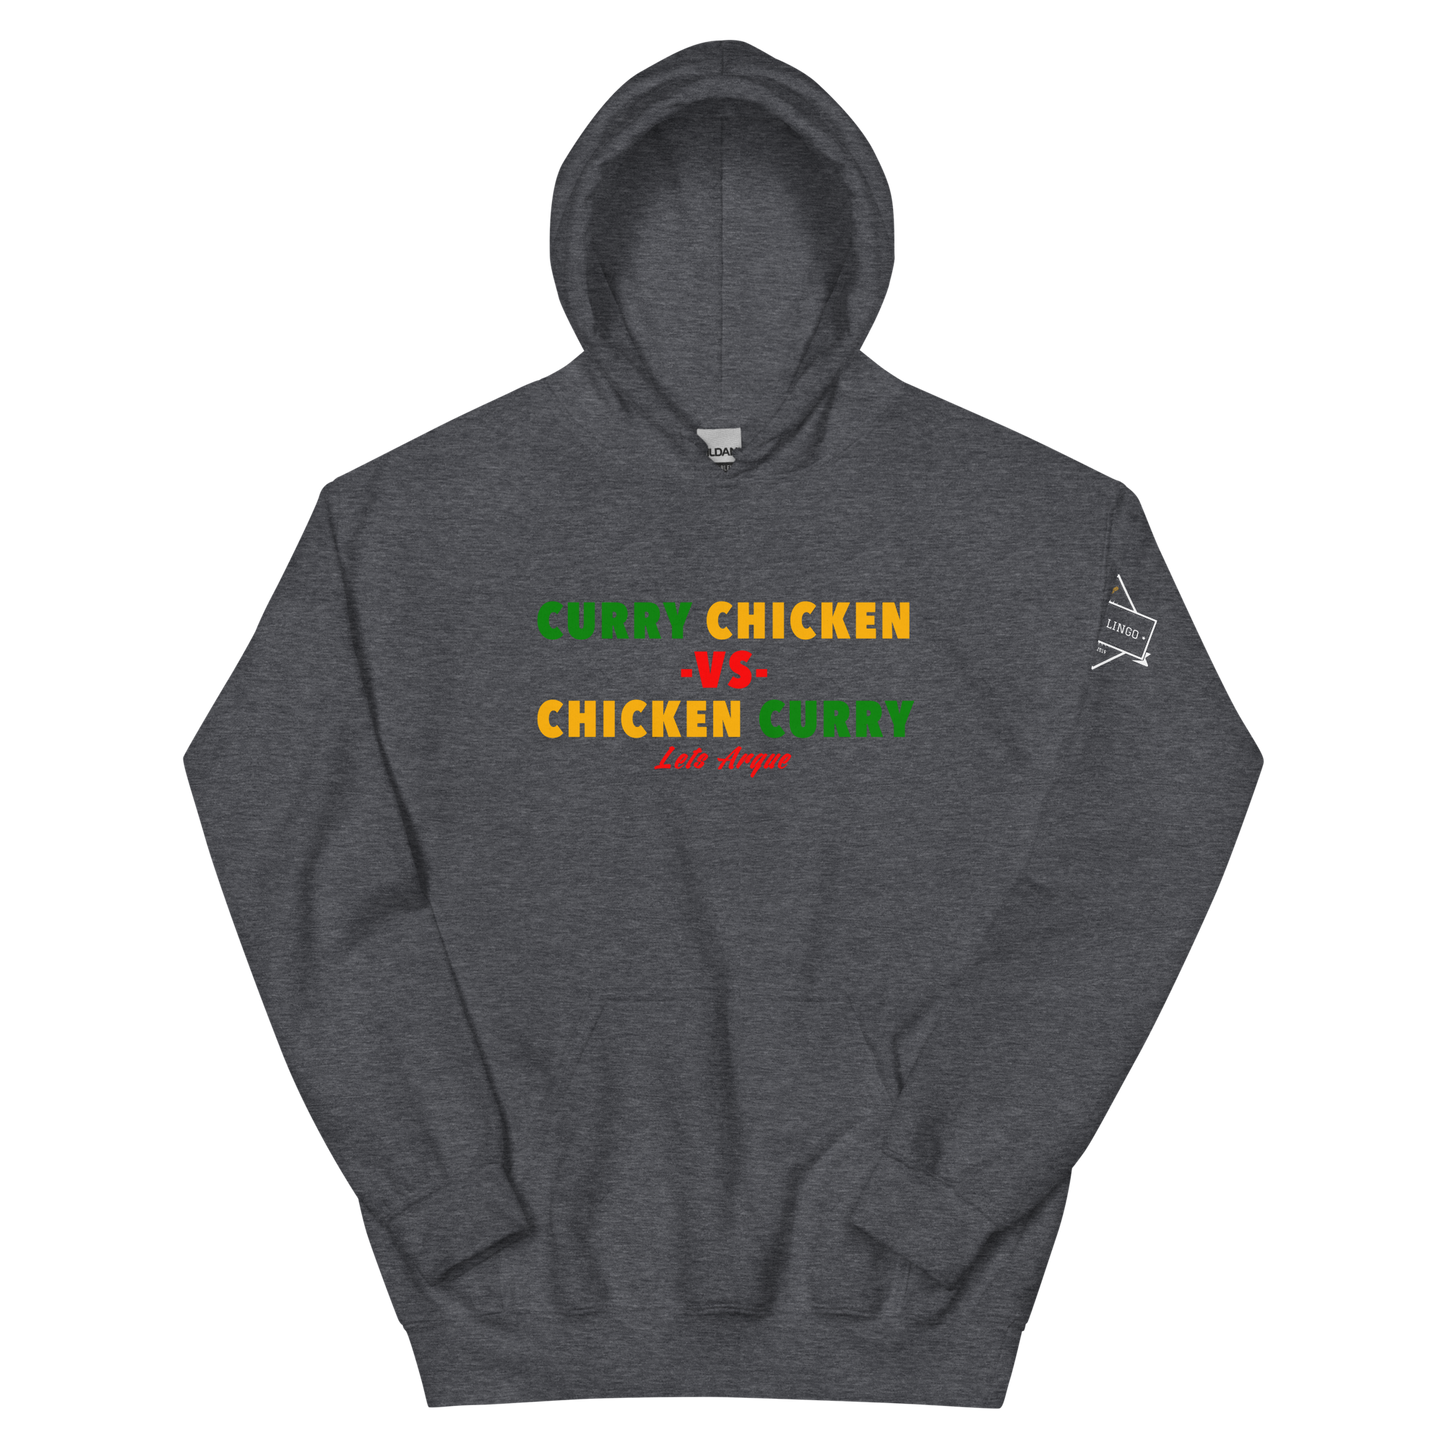 Curry Chicken -vs- Chicken Curry Unisex Hoodie